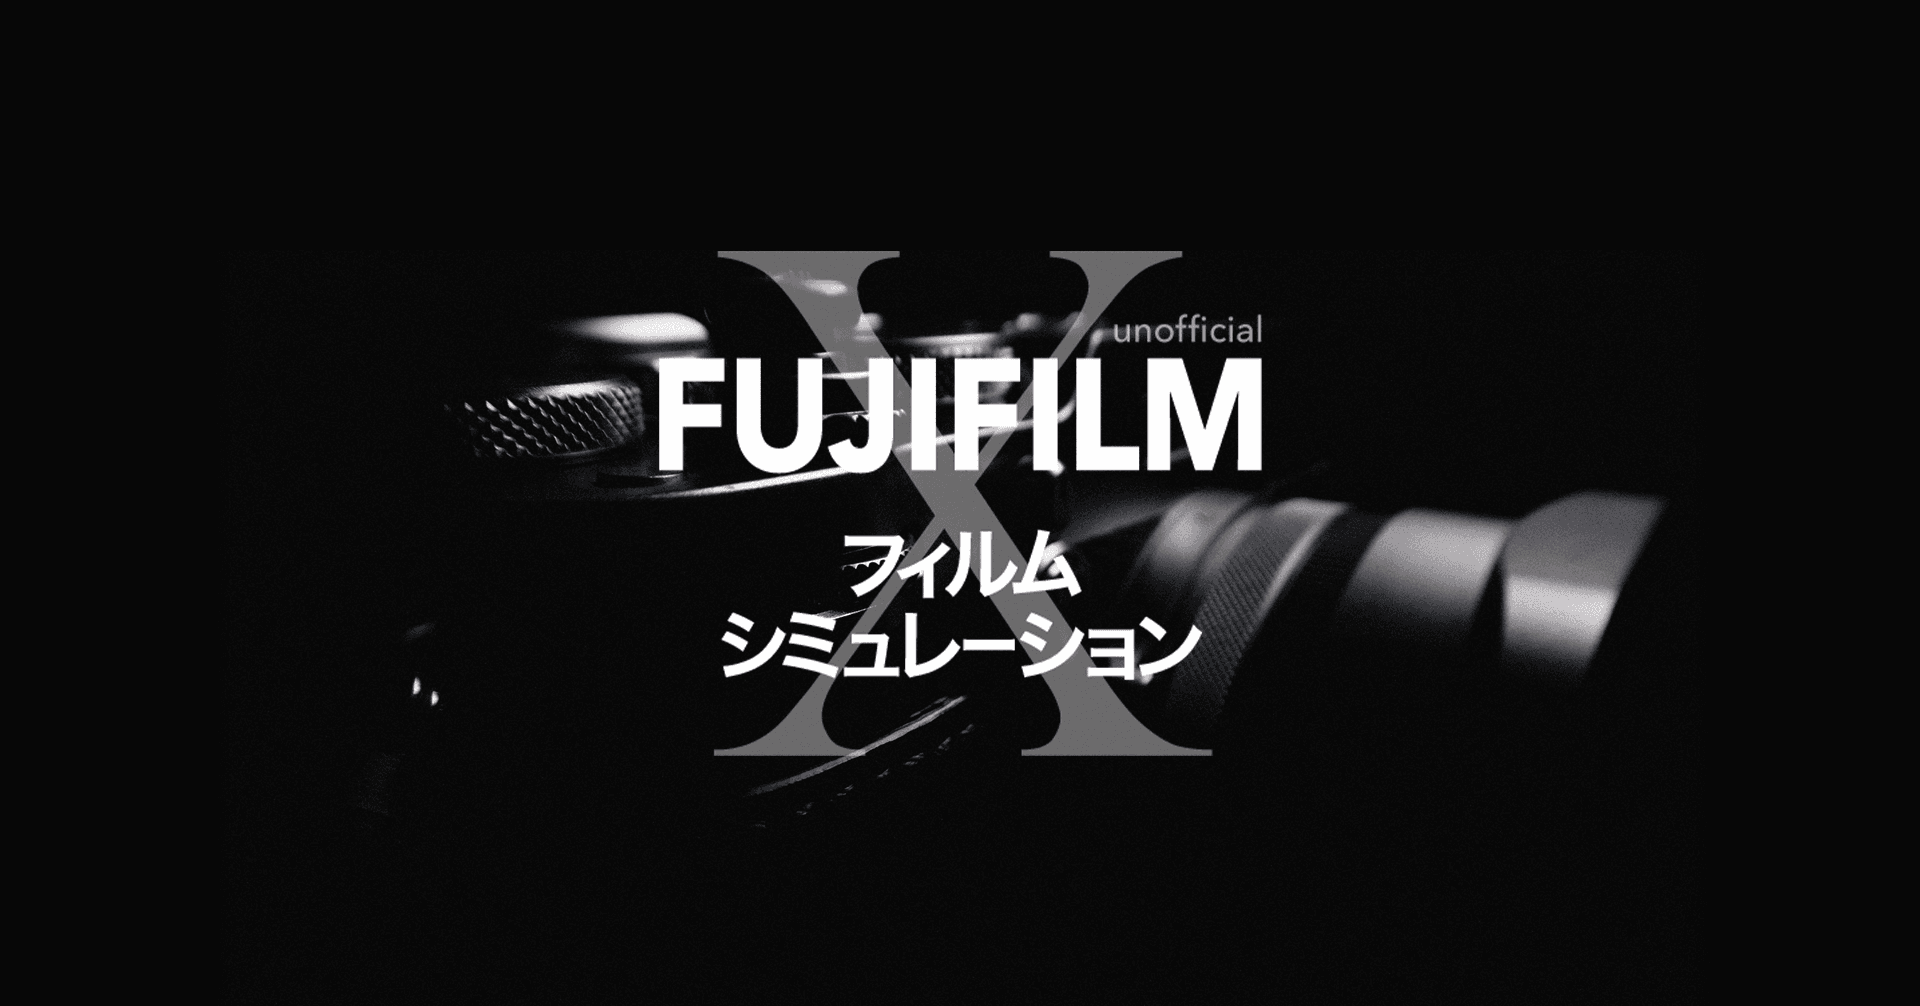 FUJIFILM フィルムシミュレーション